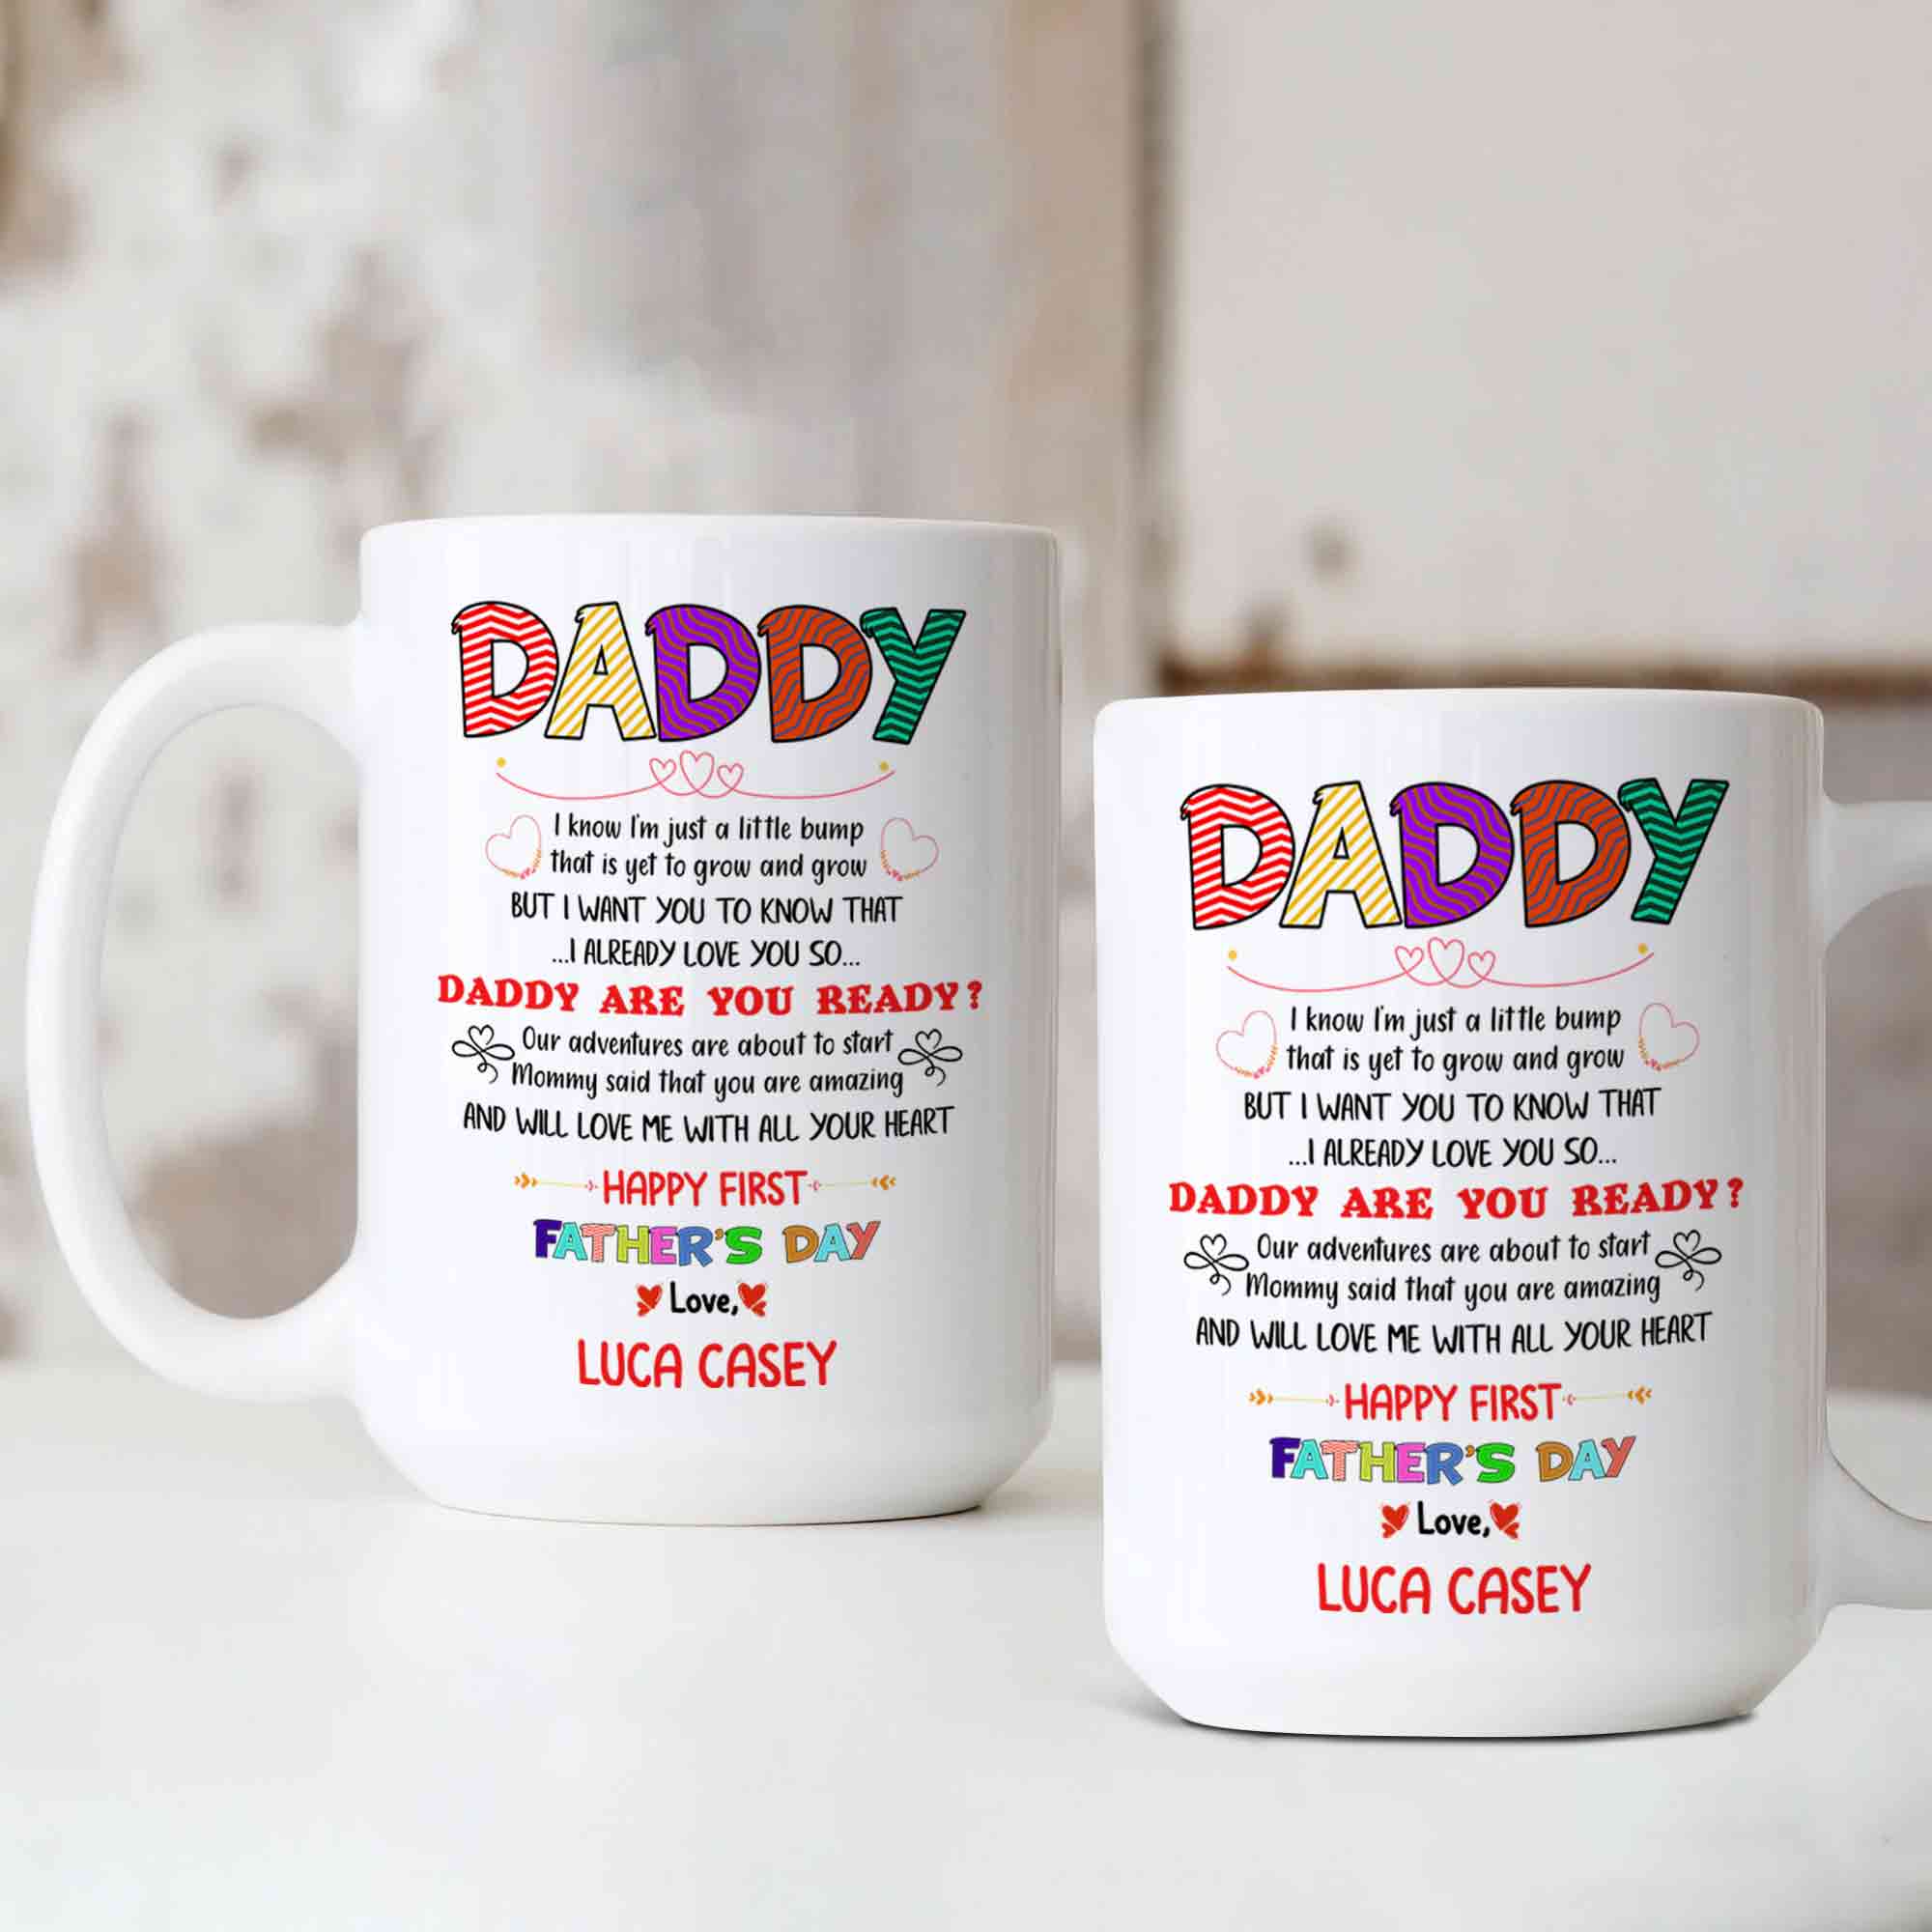 Daddy Mug, Happy Father's Day Mug, Family Mug, Custom Name Mug, Gift Mug For Father